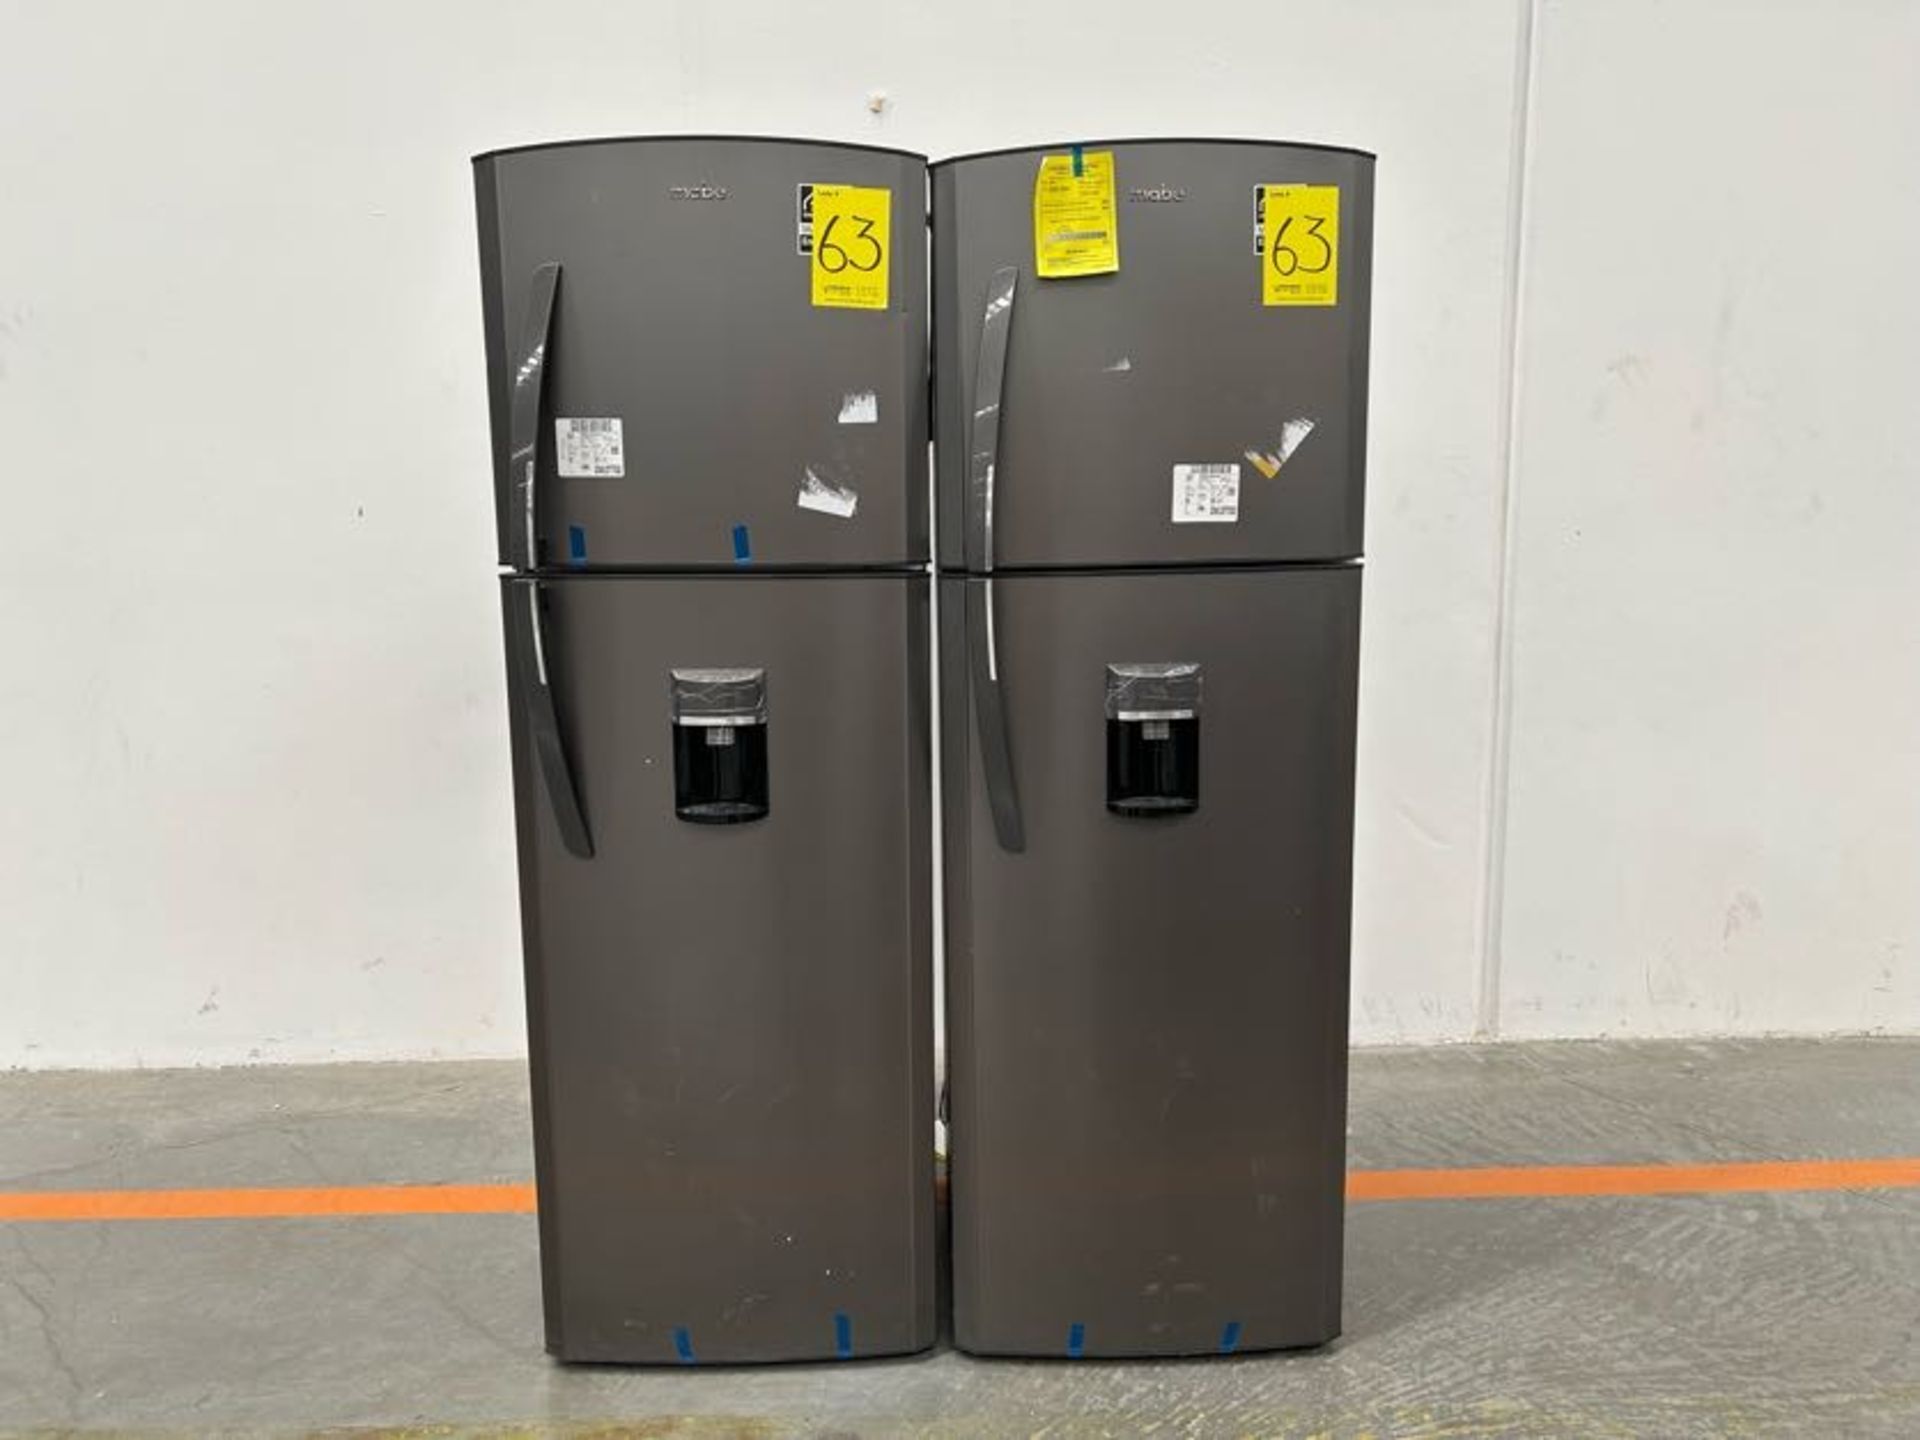 Lote de 2 Refrigeradores contiene: 1 Refrigerador con dispensador de agua Marca MABE, Modelo RMA300